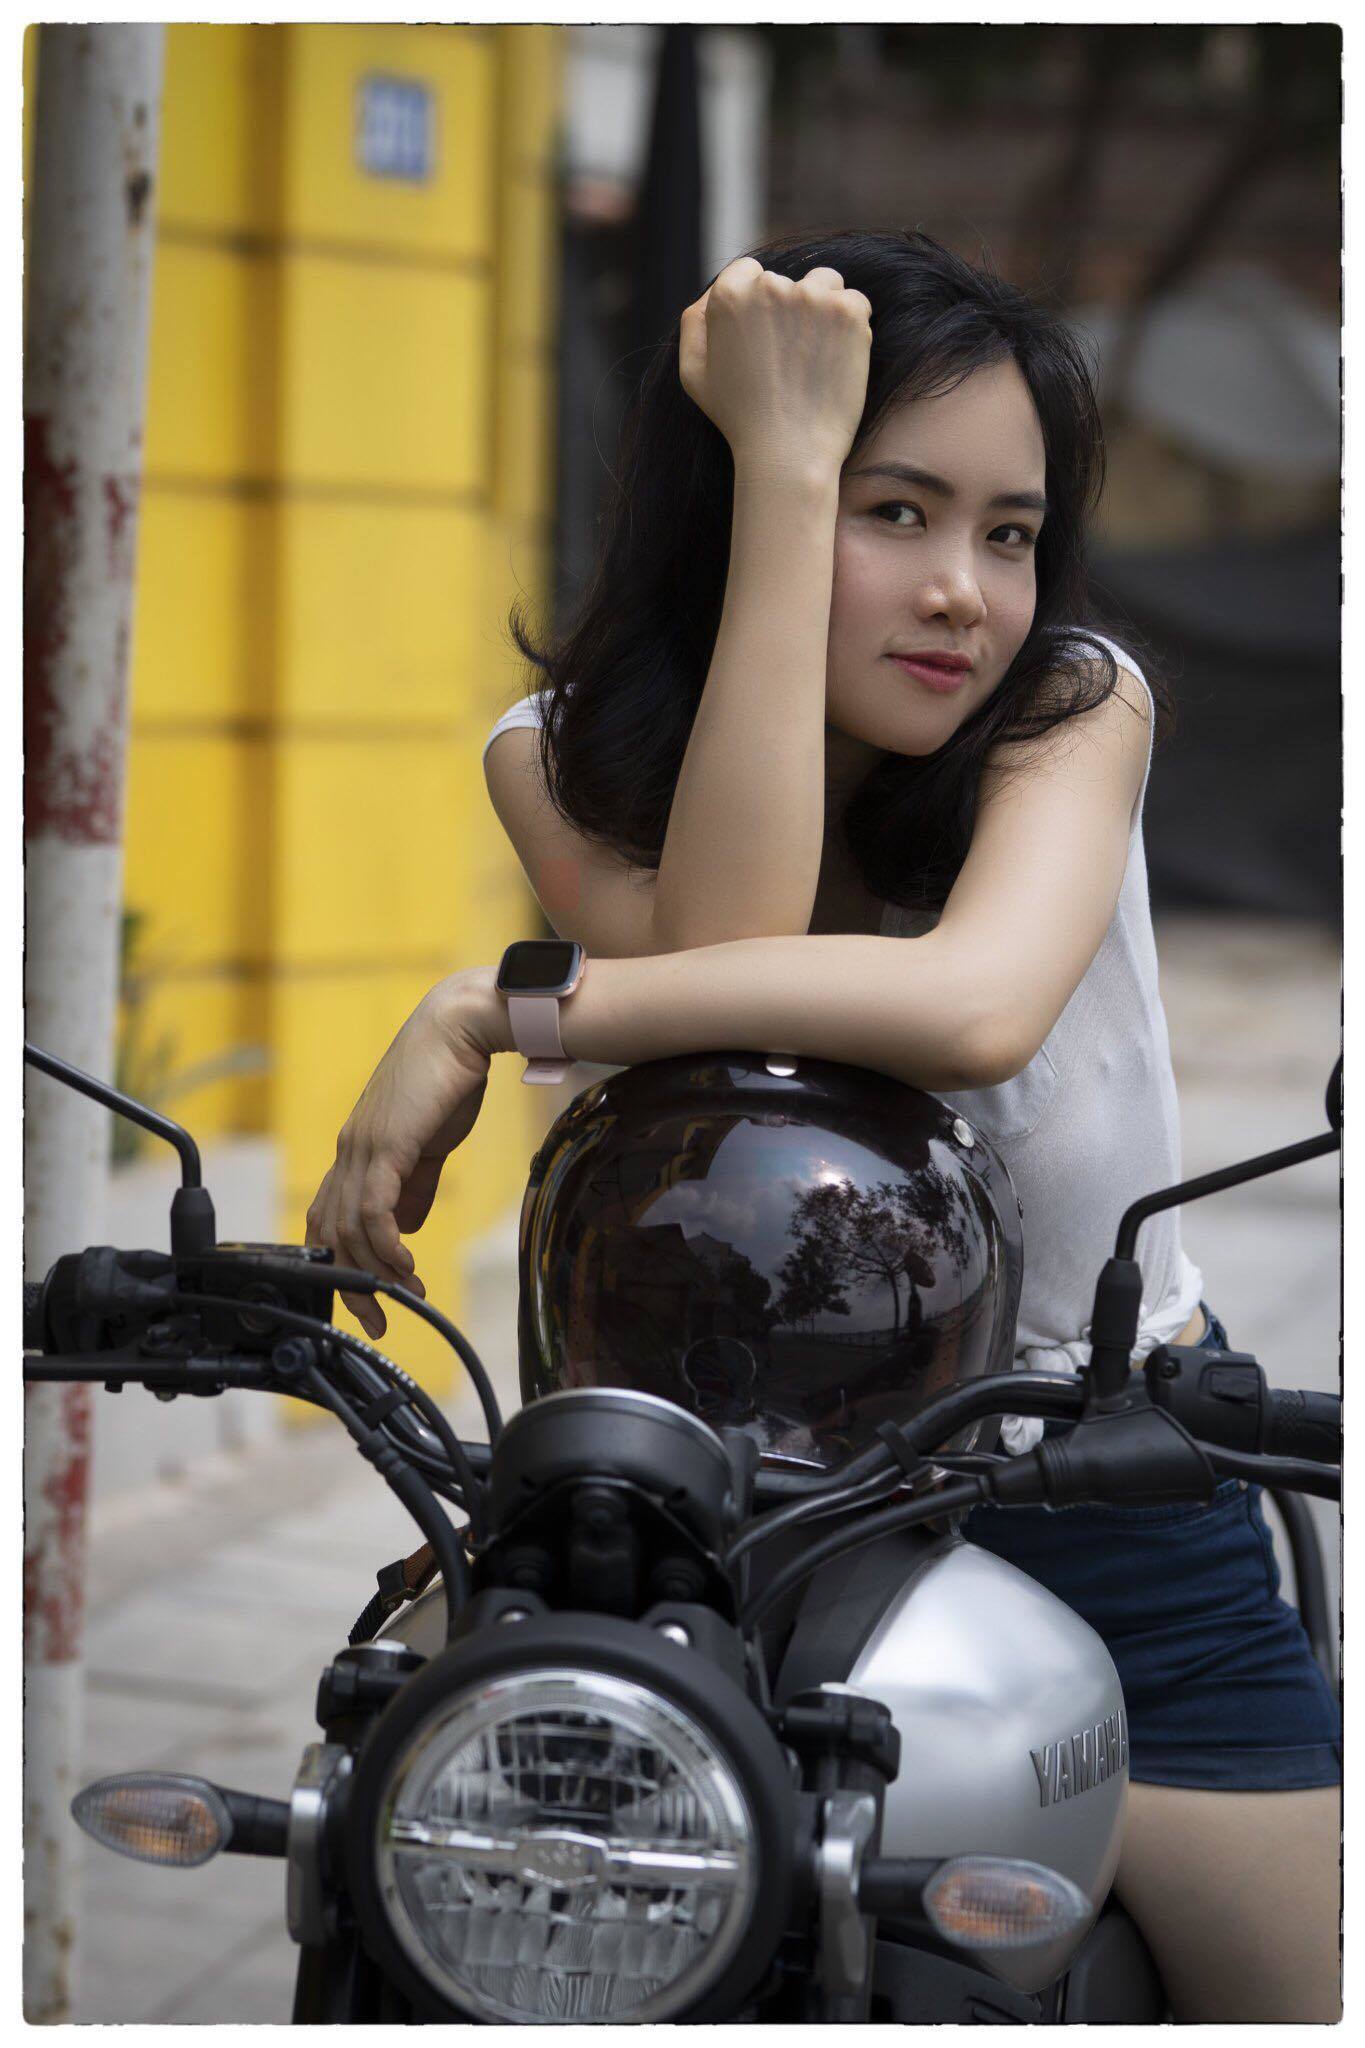 ‘Hot mom’ U40 ở Hà Nội trẻ trung như gái đôi mươi khiến dân mạng kinh ngạc